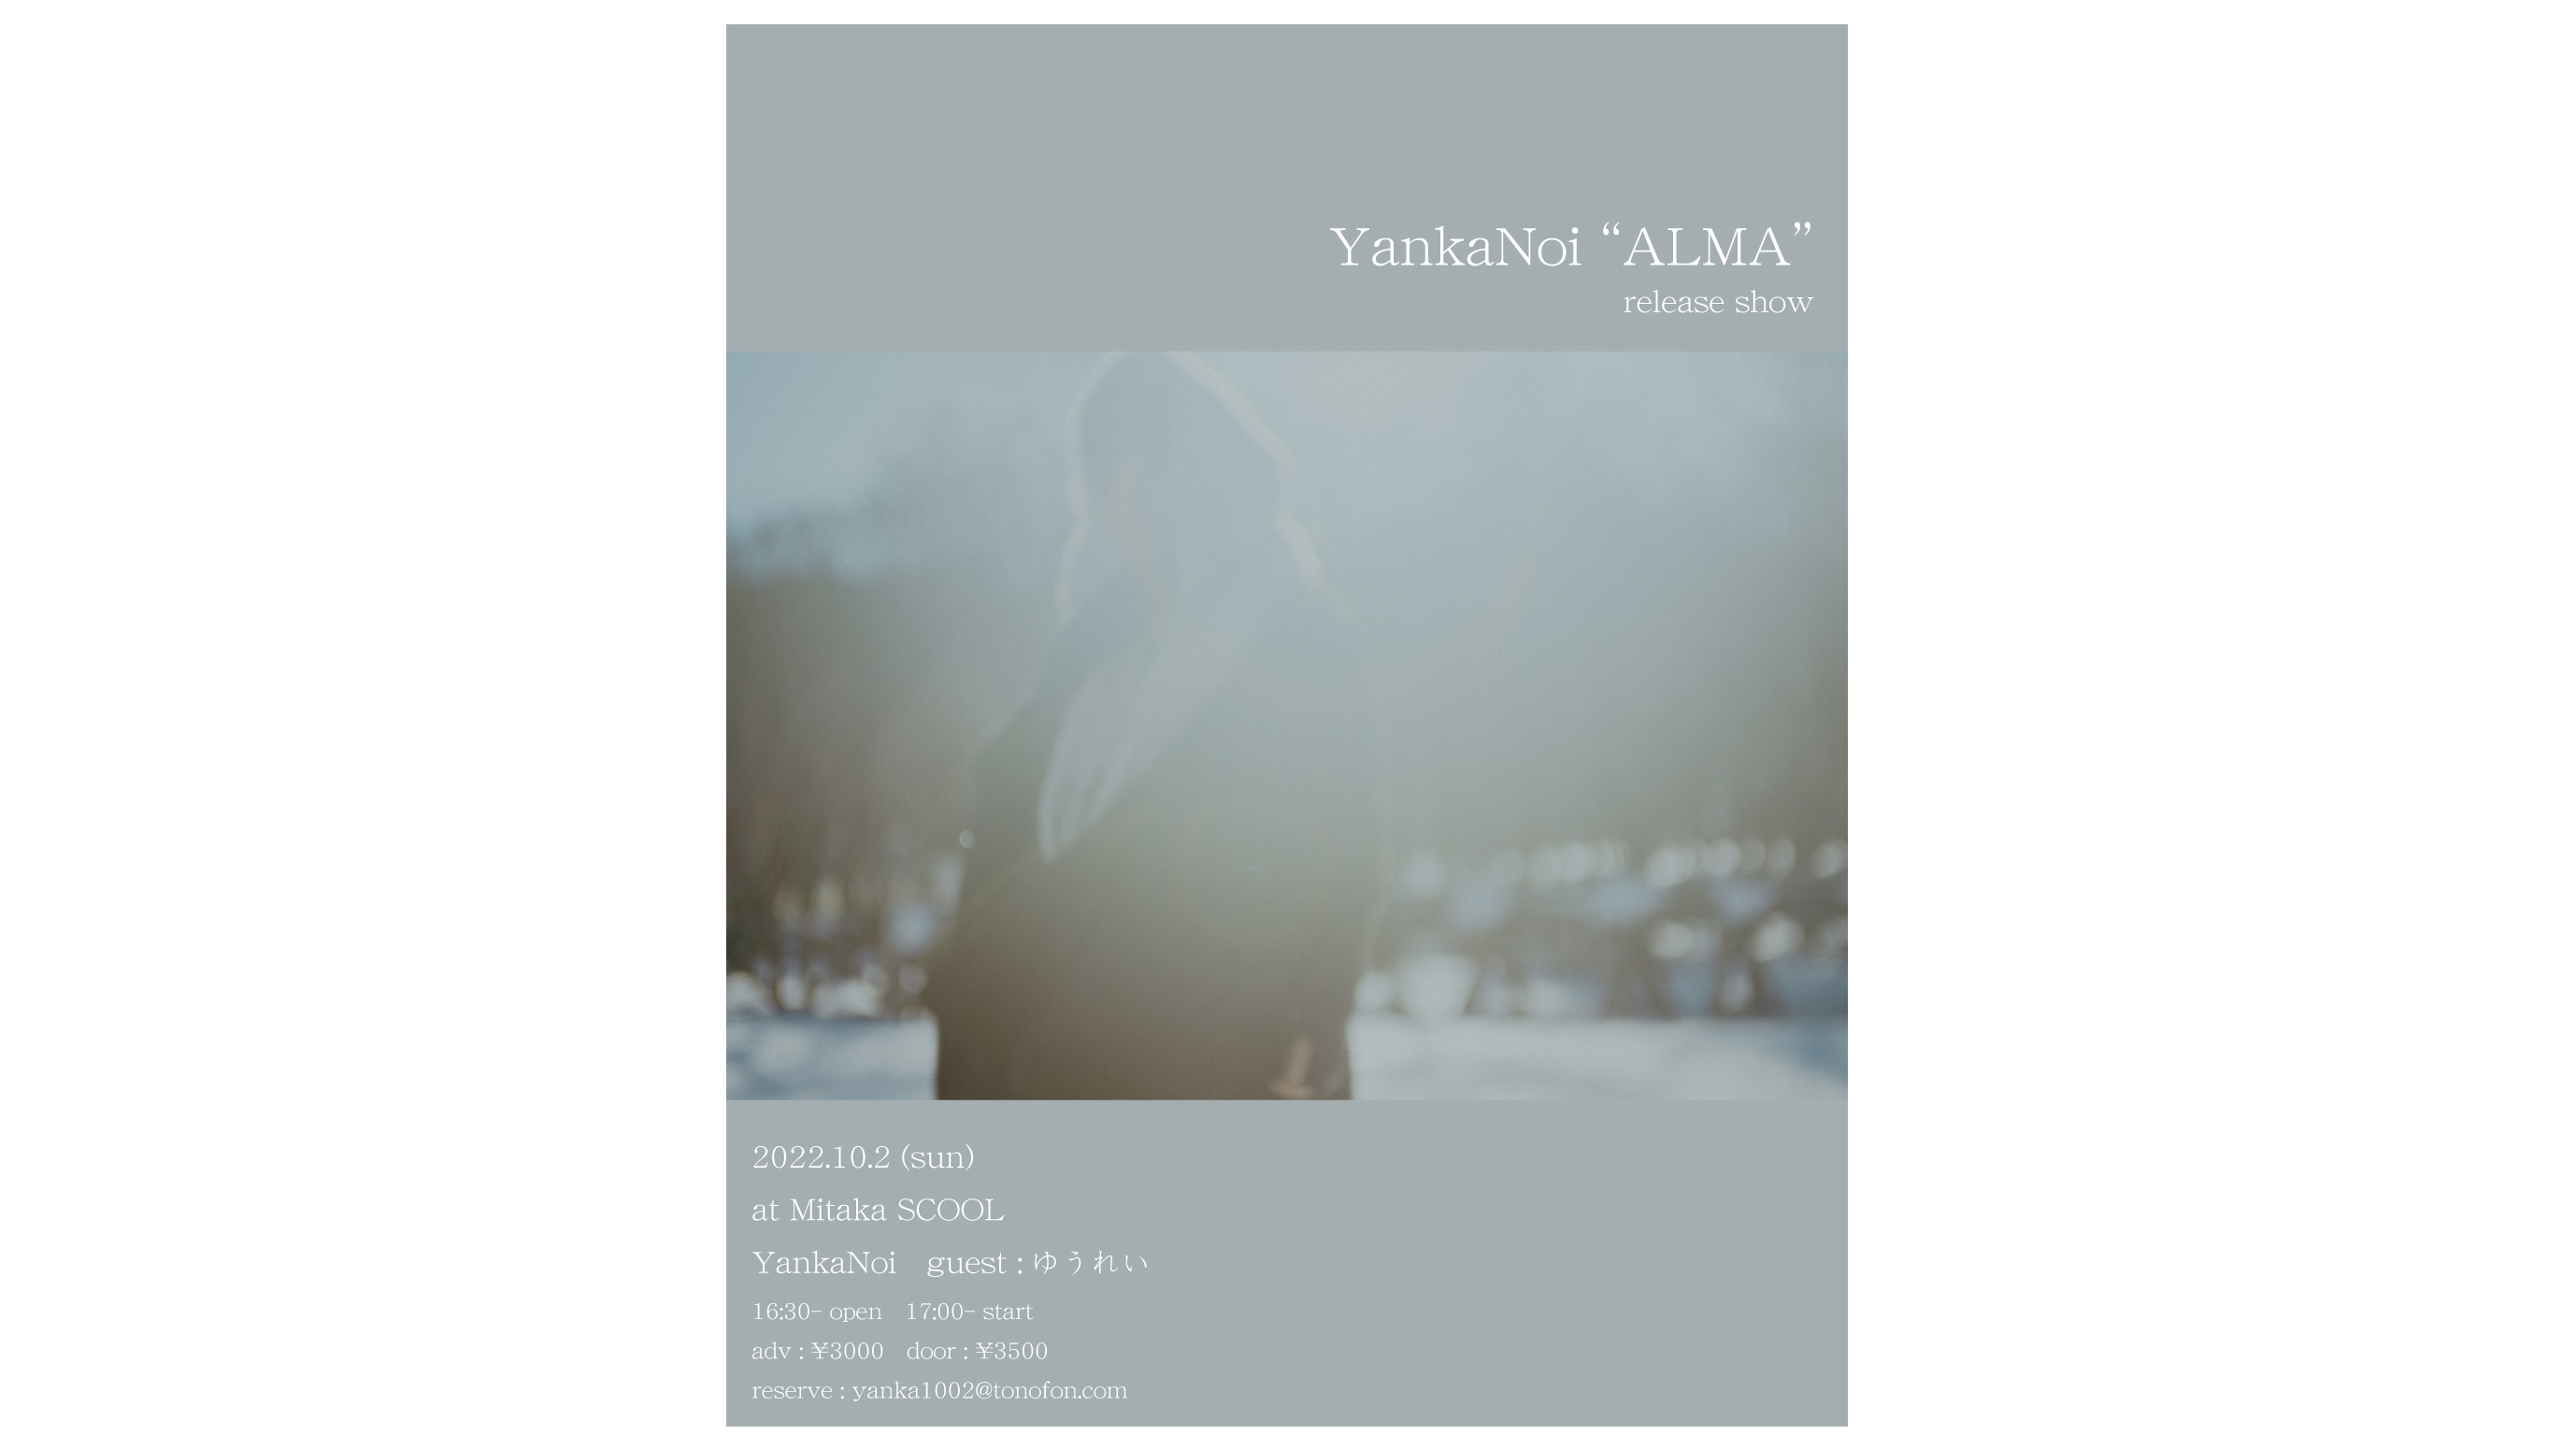 YankaNoi “ALMA” release show